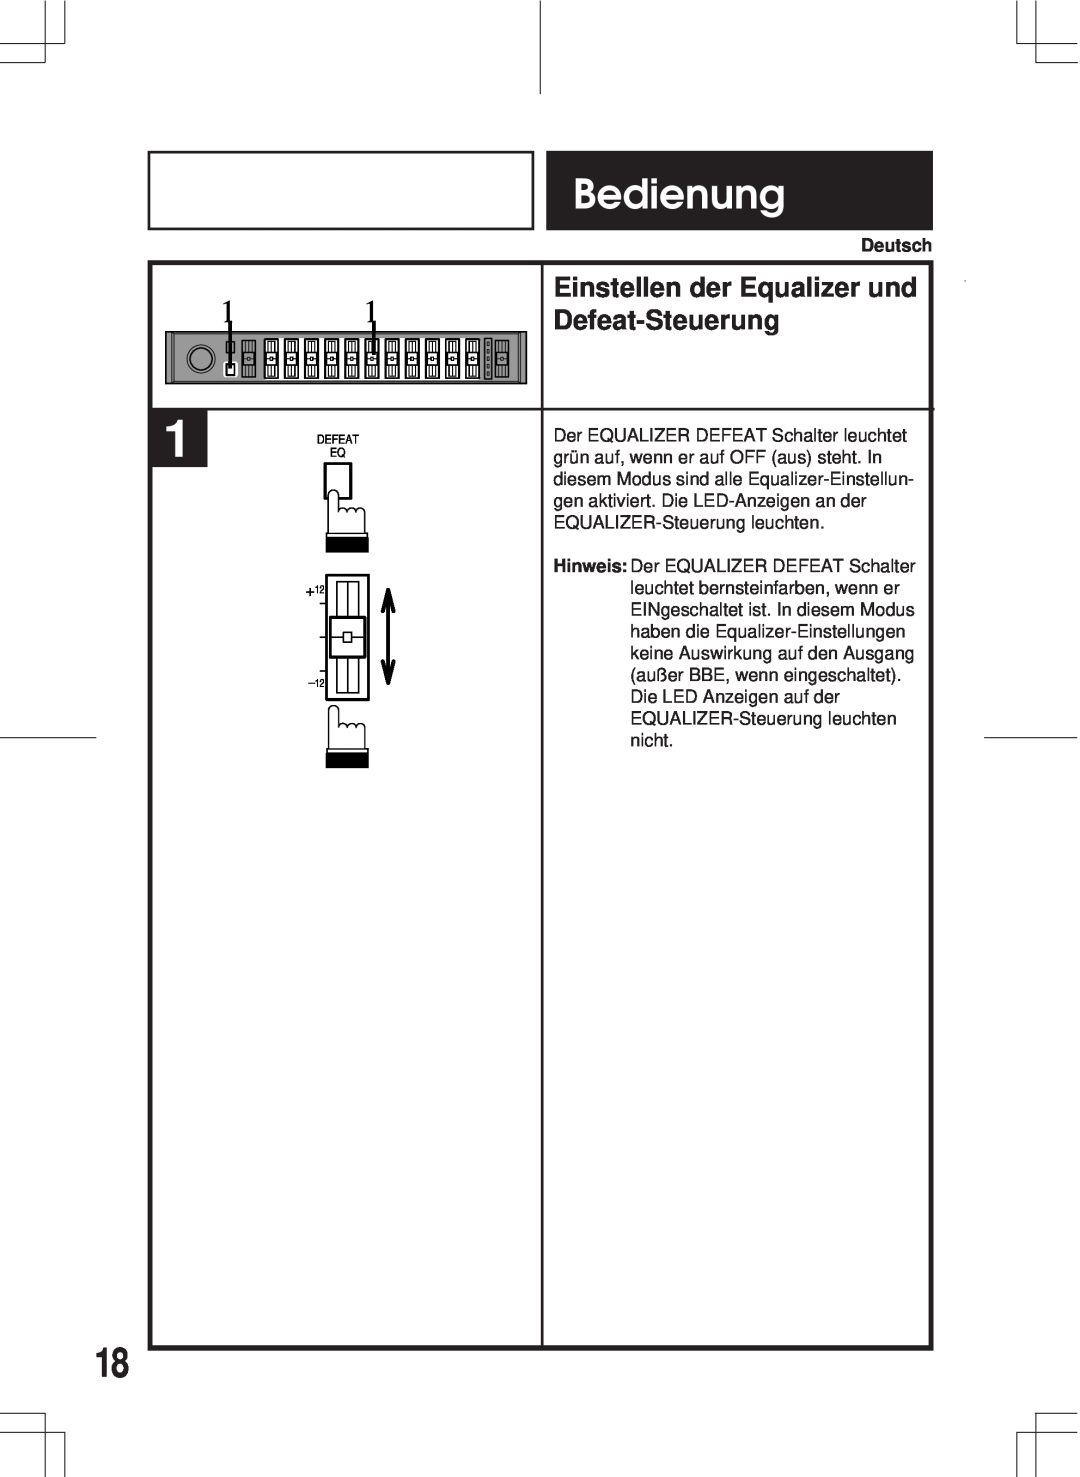 Alpine ERE-G180 owner manual Einstellen der Equalizer und, Defeat-Steuerung, Bedienung 